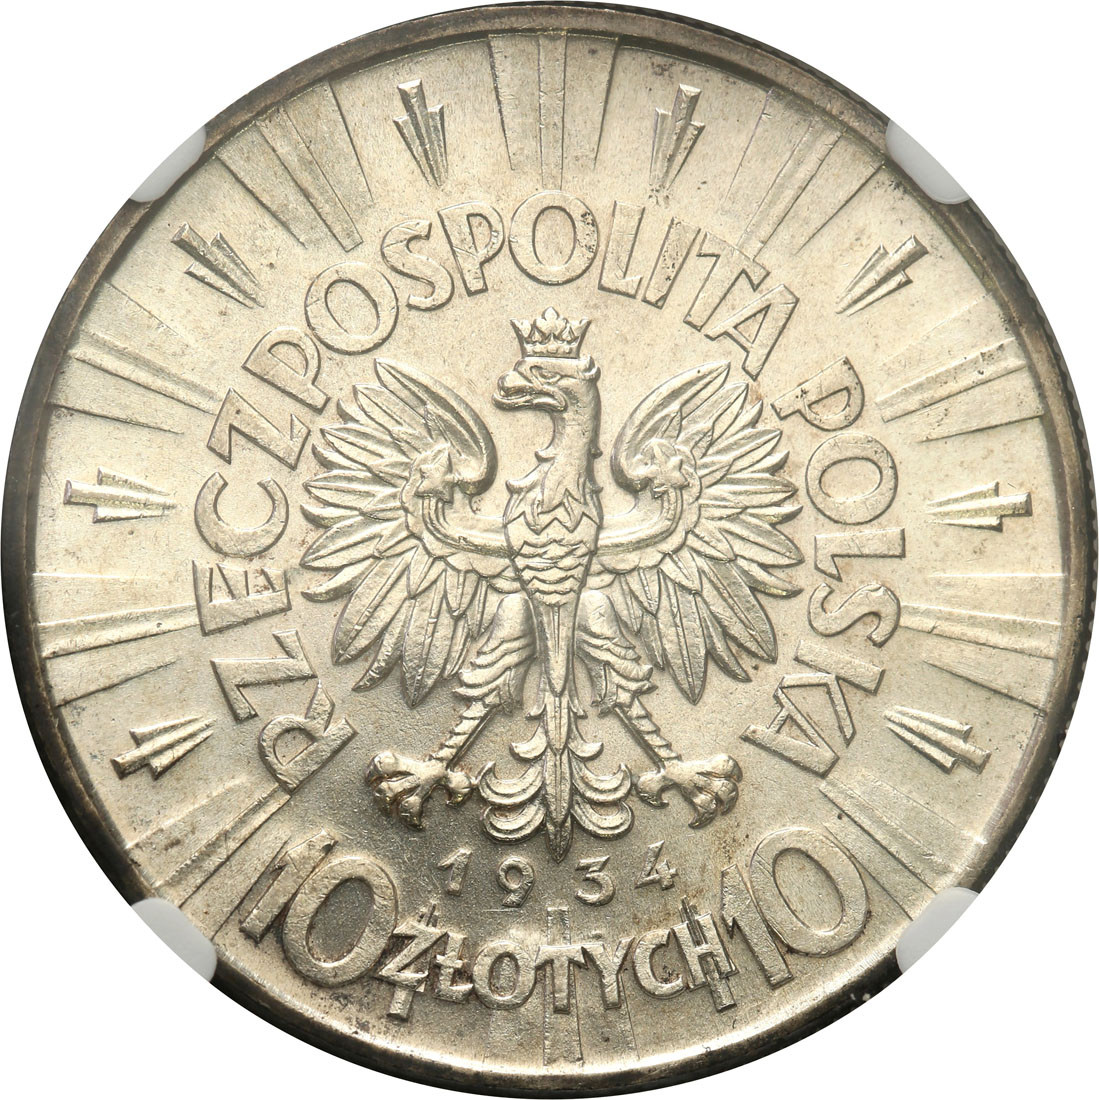 II RP. 10 złotych 1934 Piłsudski NGC MS63 - Piękne i rzadkie